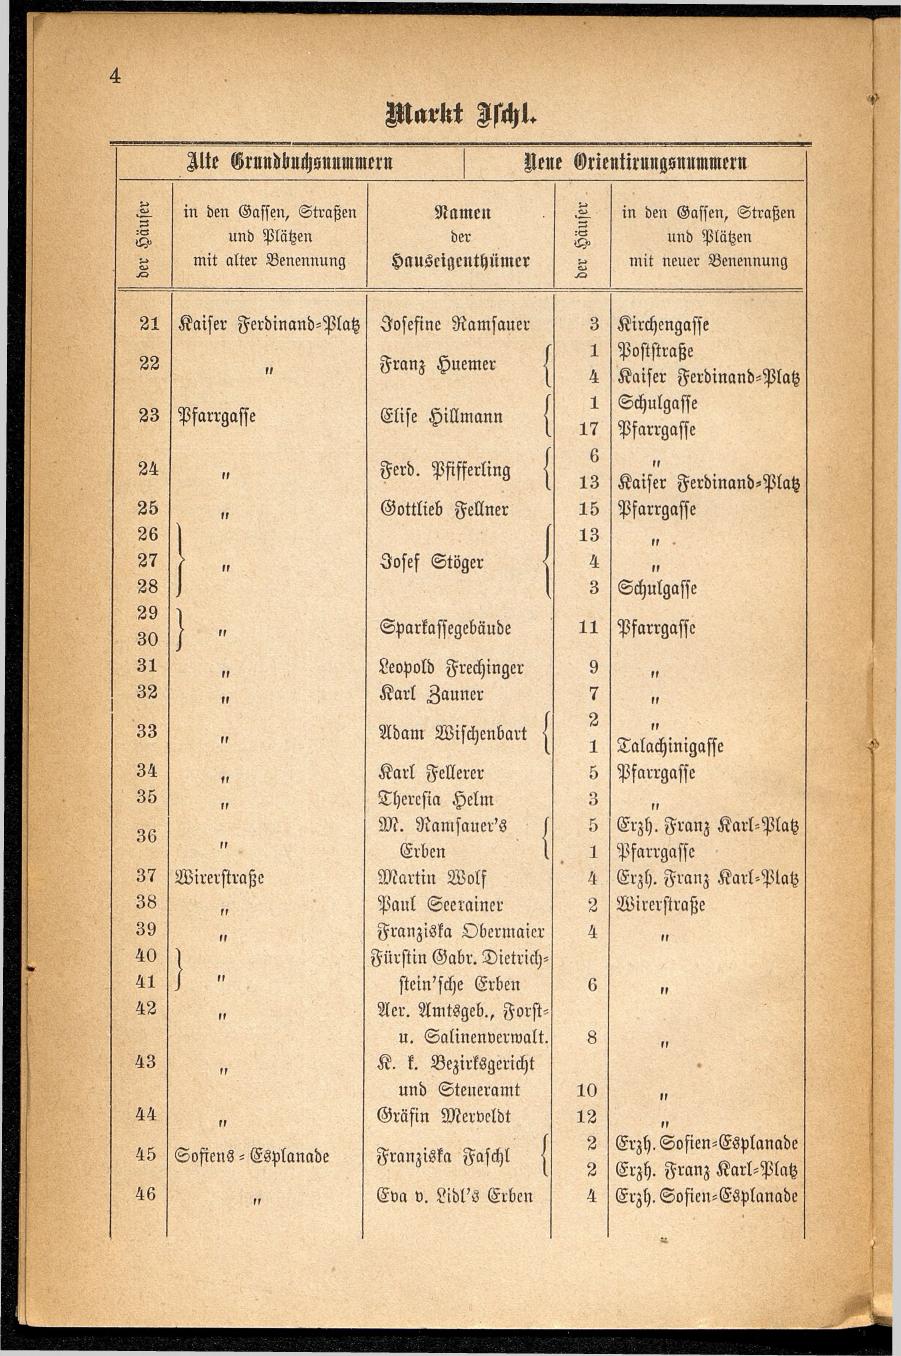 Häuser-Verzeichnis des Marktes und Kurortes Ischl nach den neuen Orientirungsnummern 1881 - Seite 8